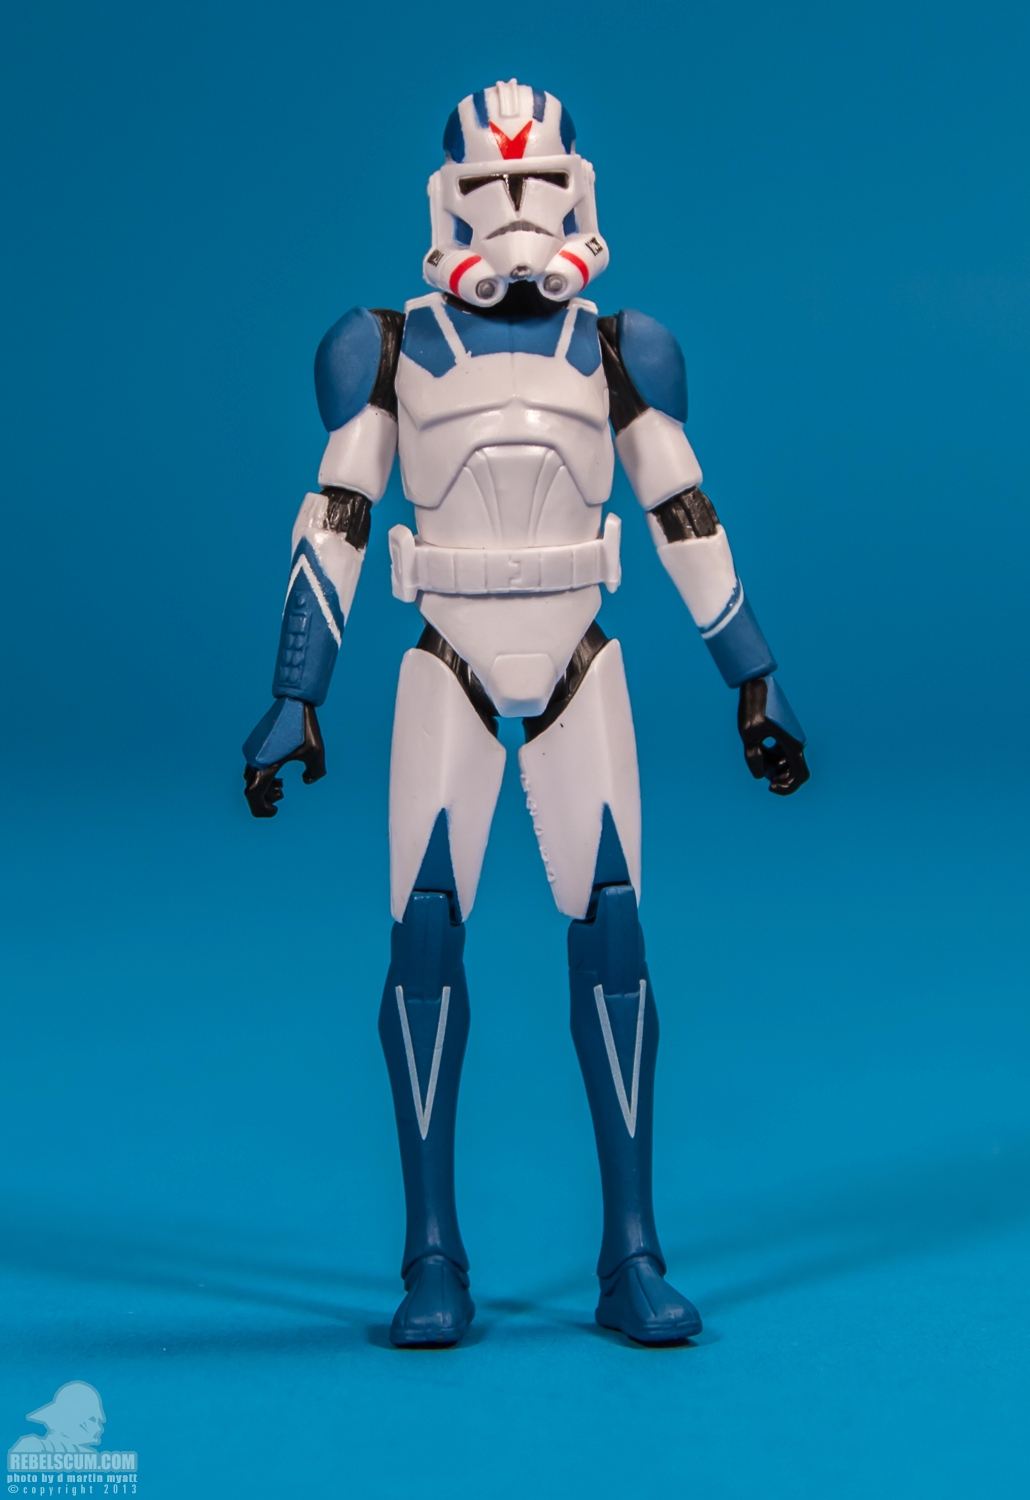 CW06_2013_501st_Legion_Clone_Trooper_ The_Clone_Wars_Star_Wars_Hasbro-01.jpg